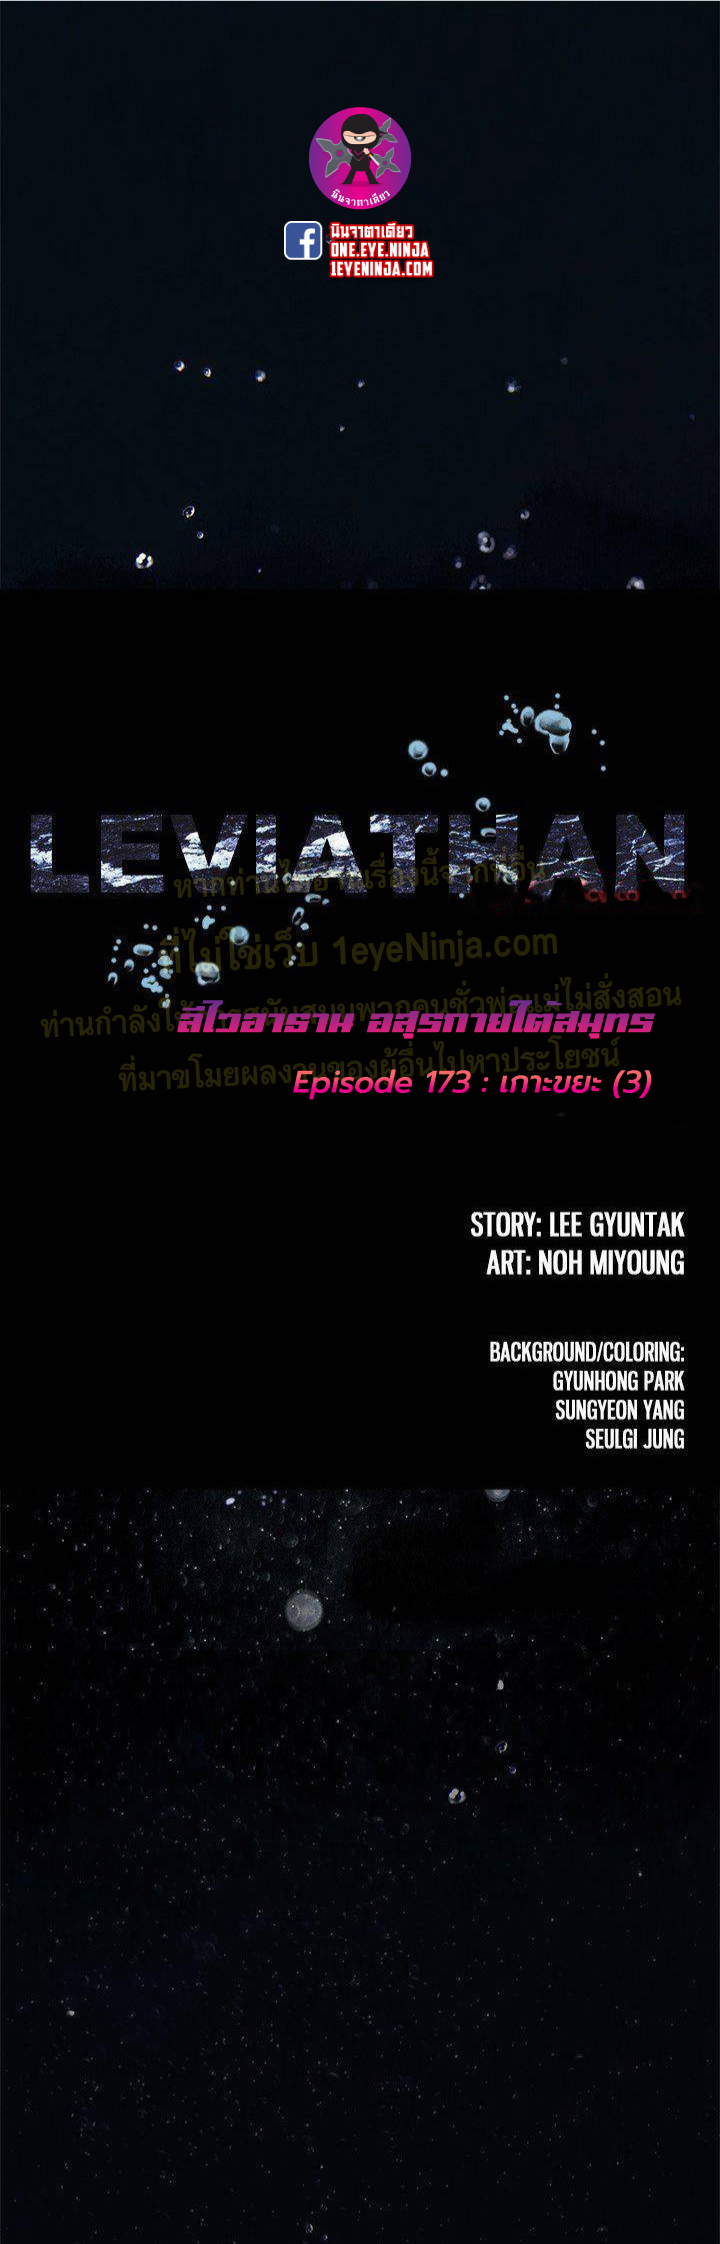 Leviathan173 01